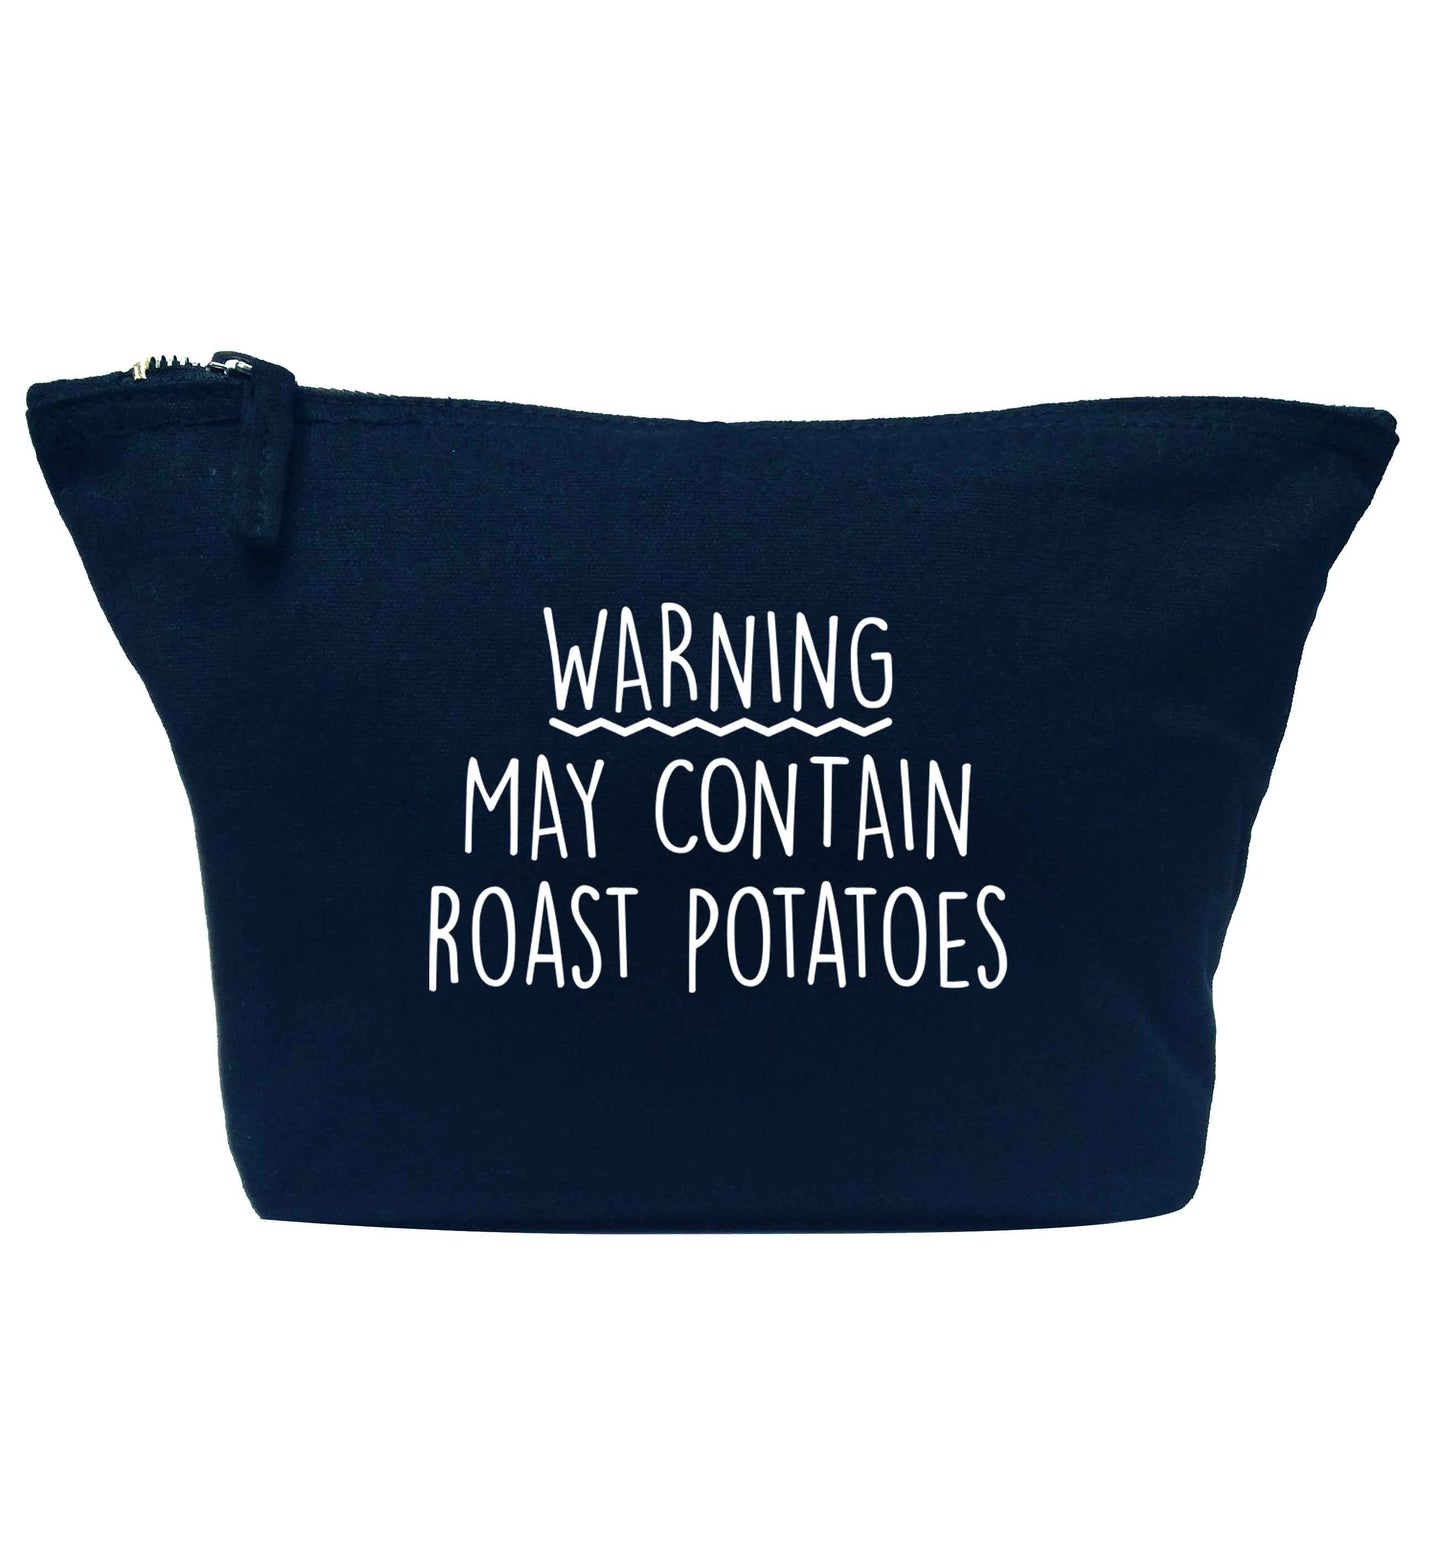 Warning may containg roast potatoes navy makeup bag